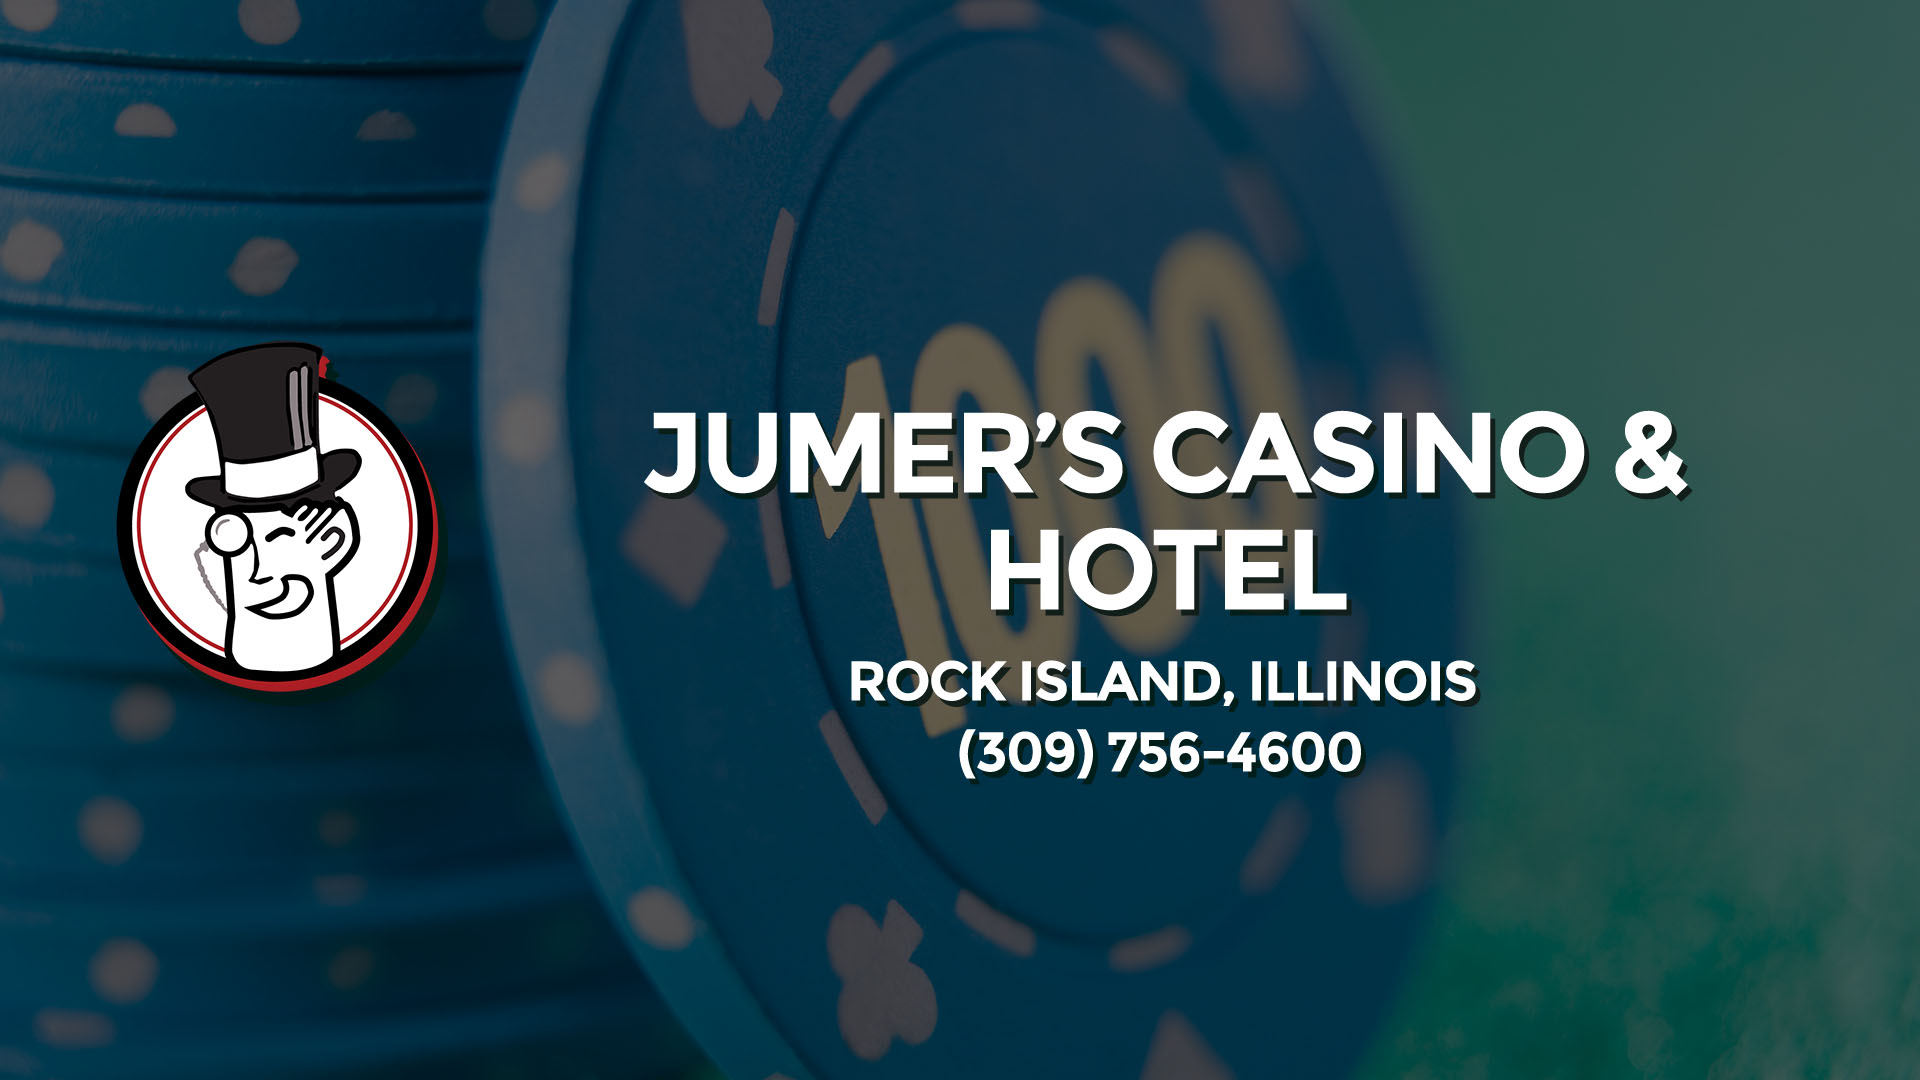 jumer casino hotel quad cities